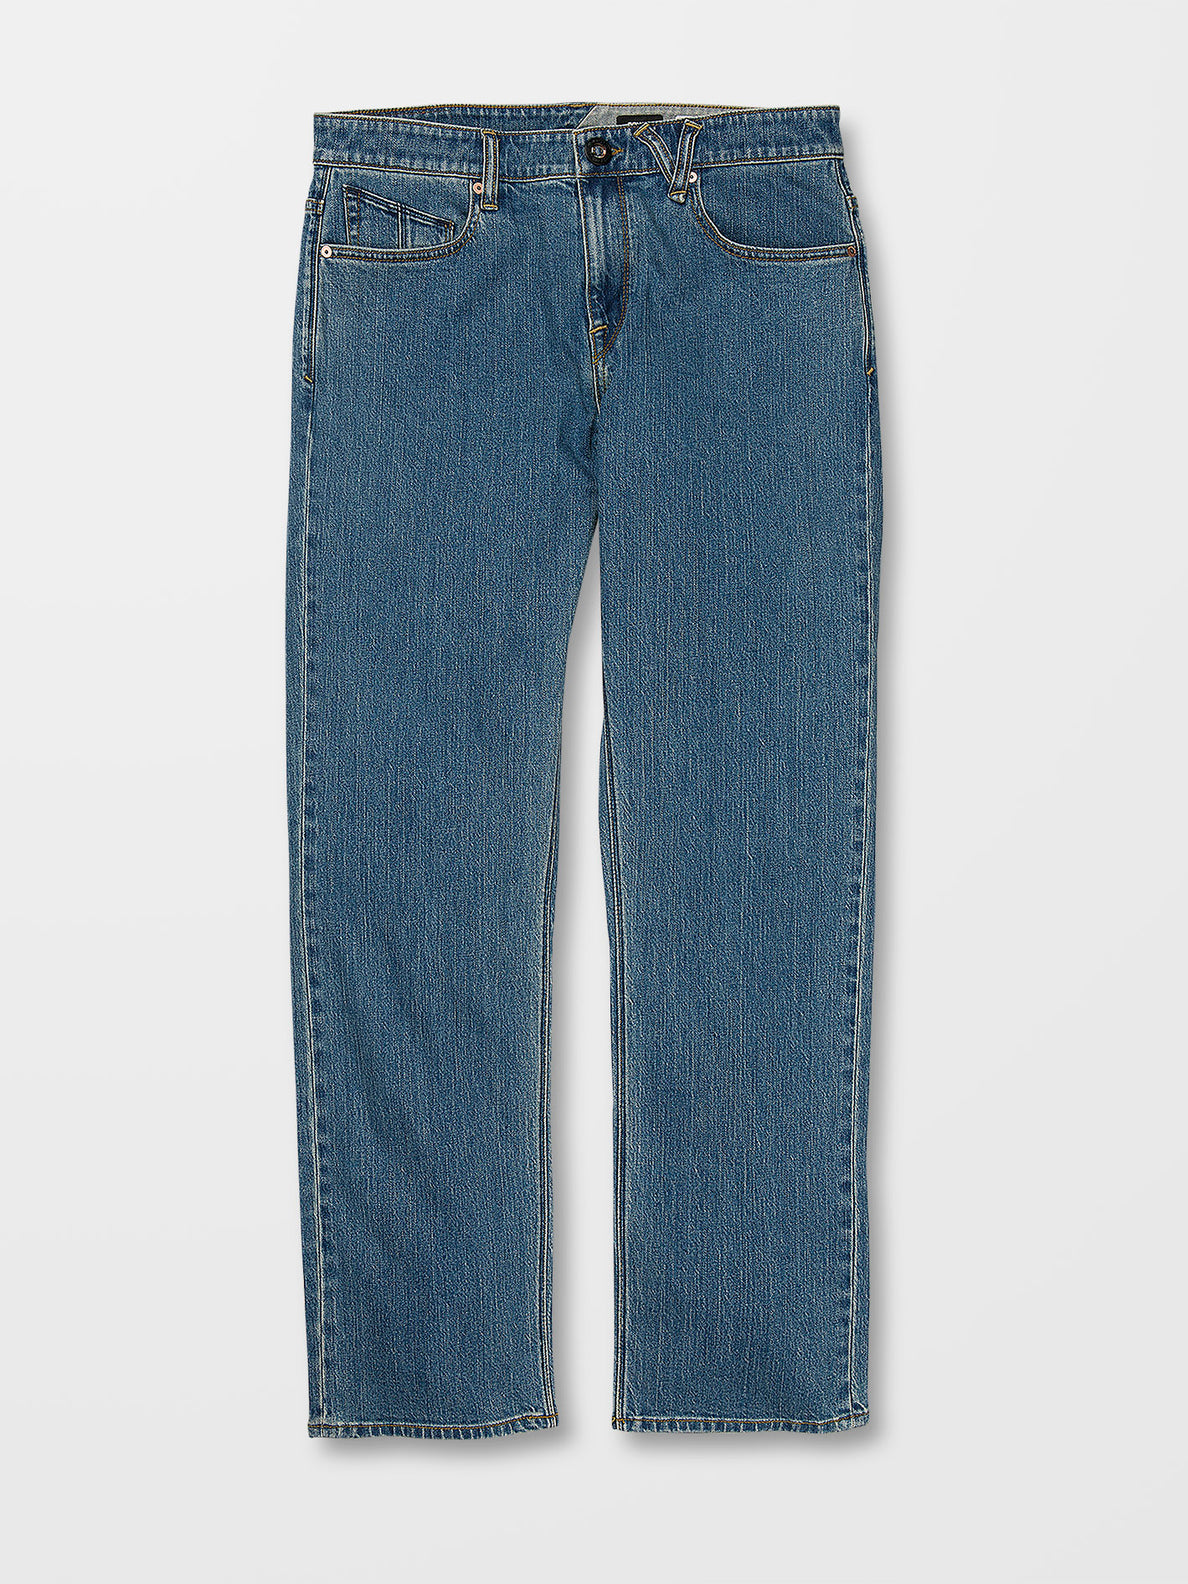 Solver Jeans - AGED INDIGO (A1912303_AIN) [6]